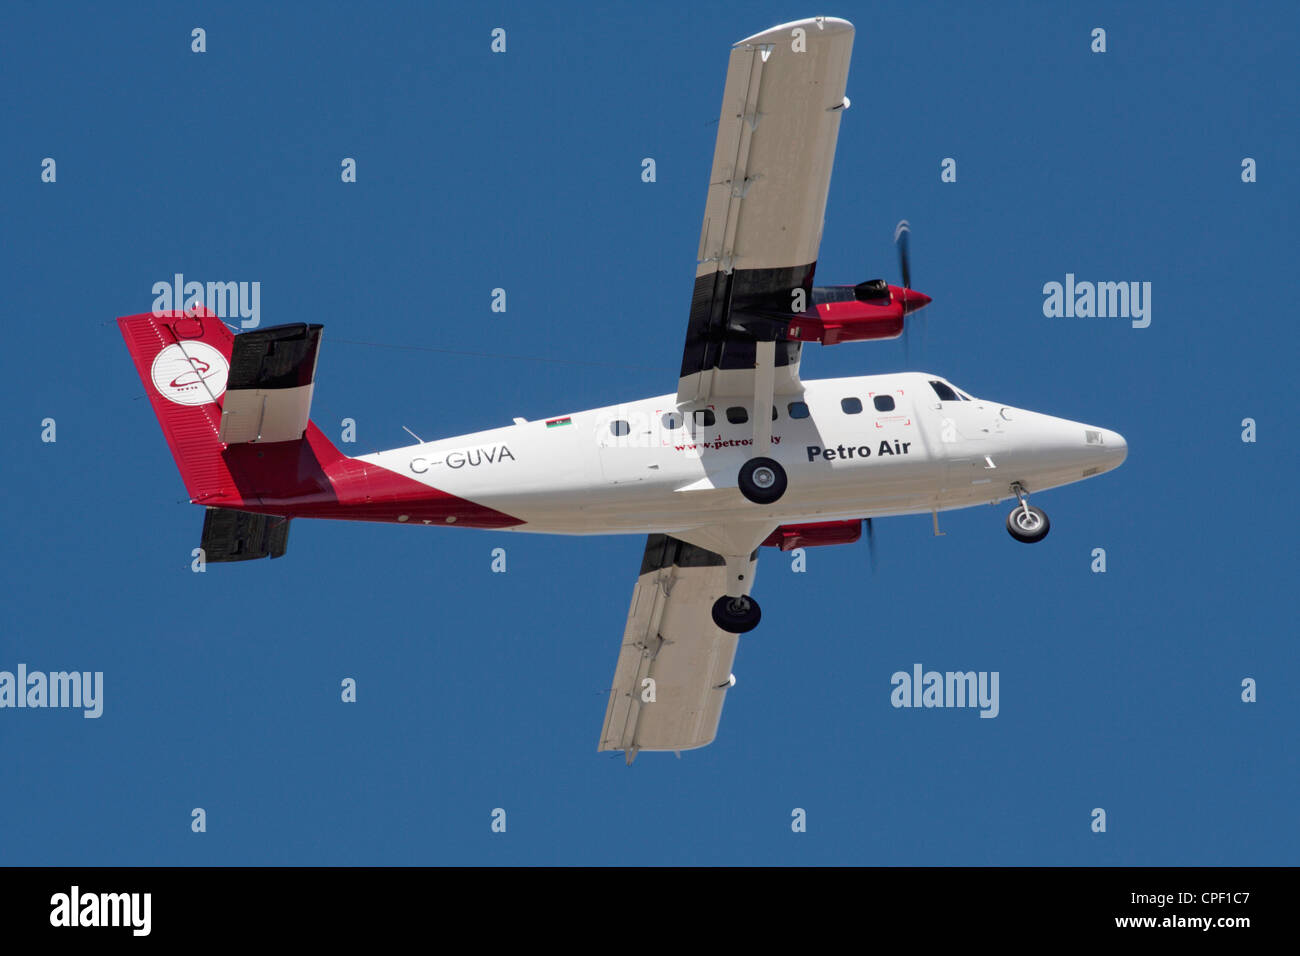 DHC -6-400 Twin Otter Light Utility Flugzeug auf Lieferung zu Petro Luft von Libyen Stockfoto